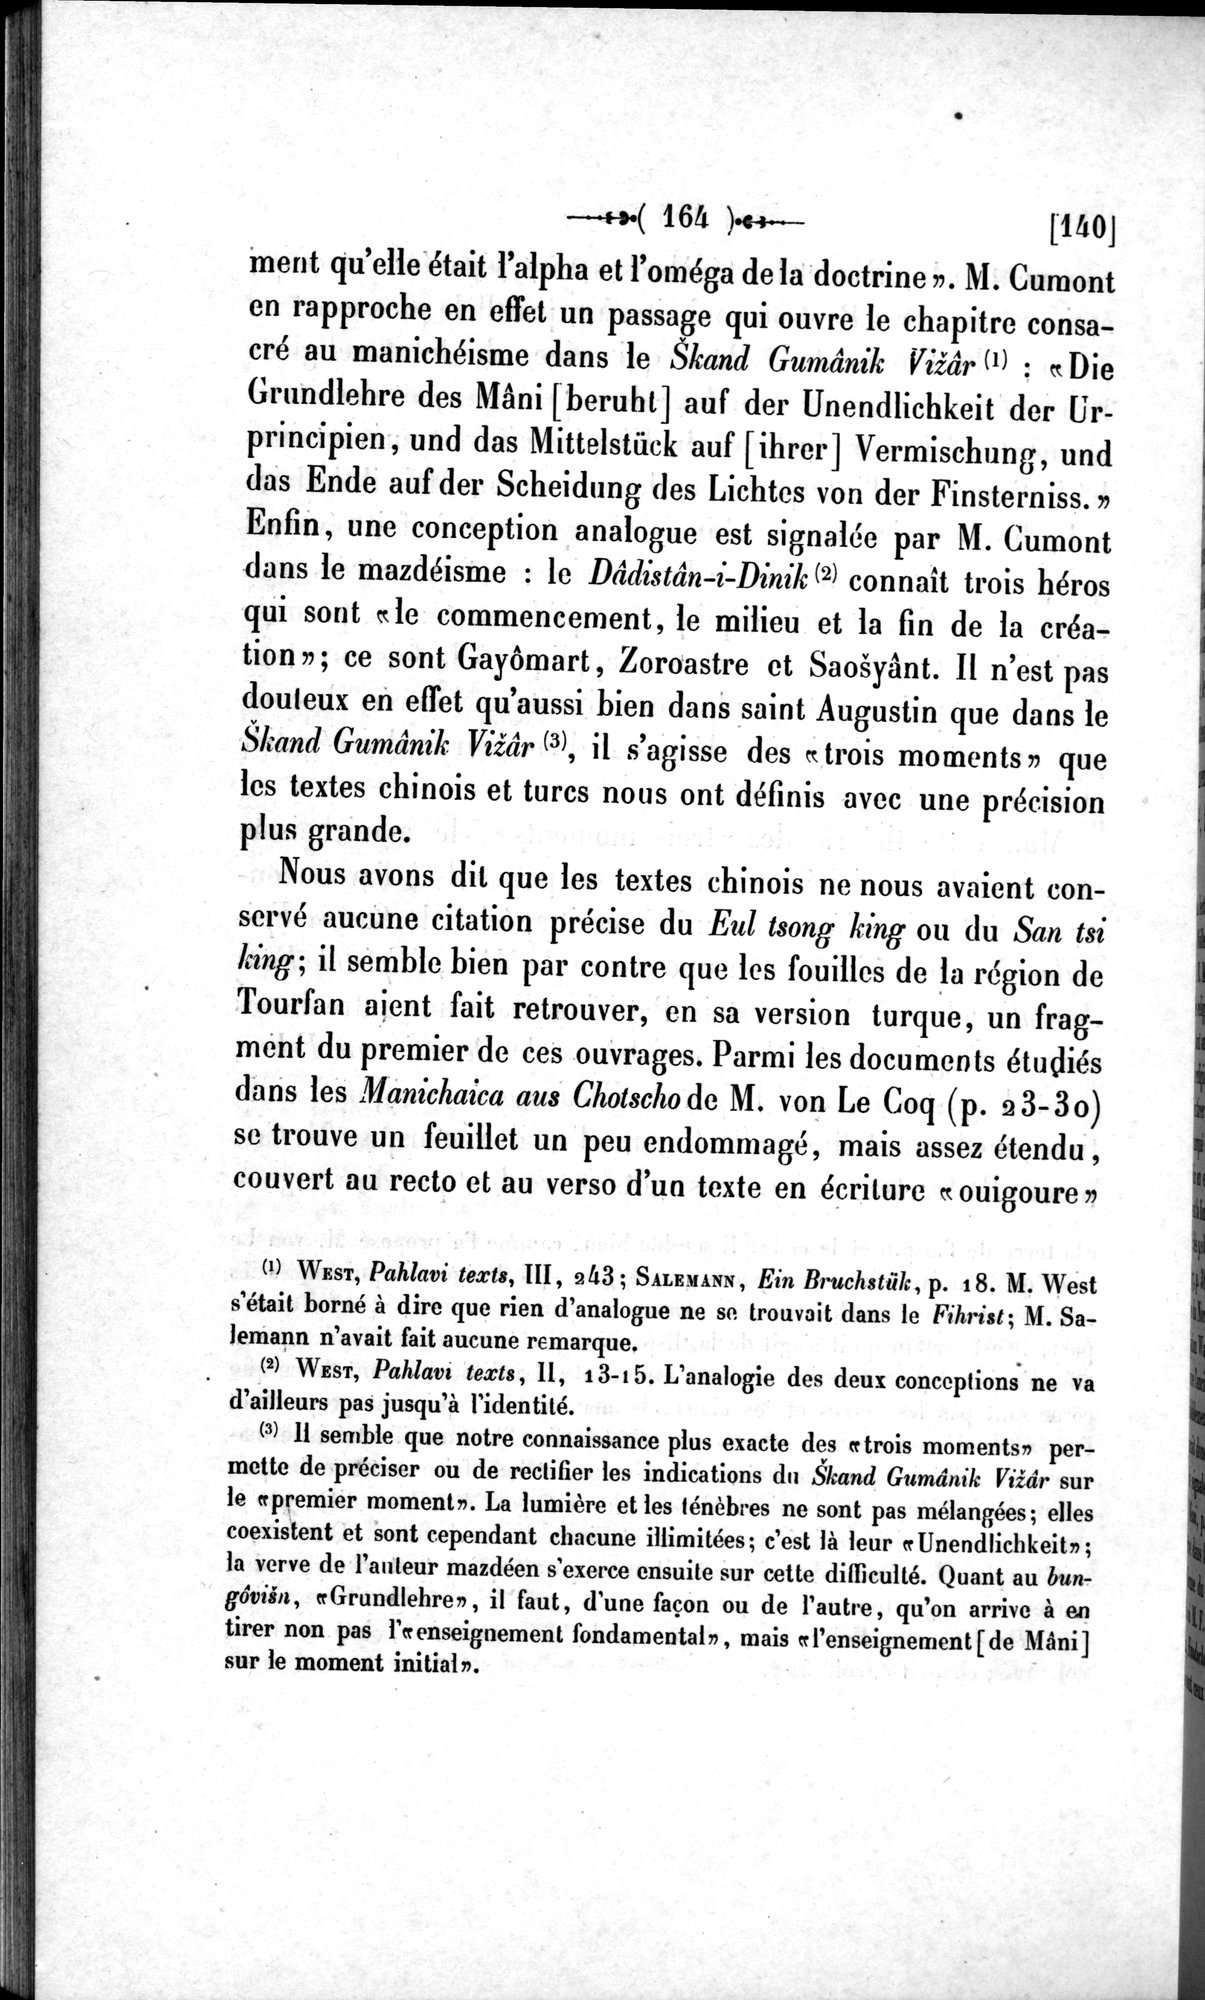 Un traité manichéen retrouvé en Chine : vol.1 / Page 174 (Grayscale High Resolution Image)